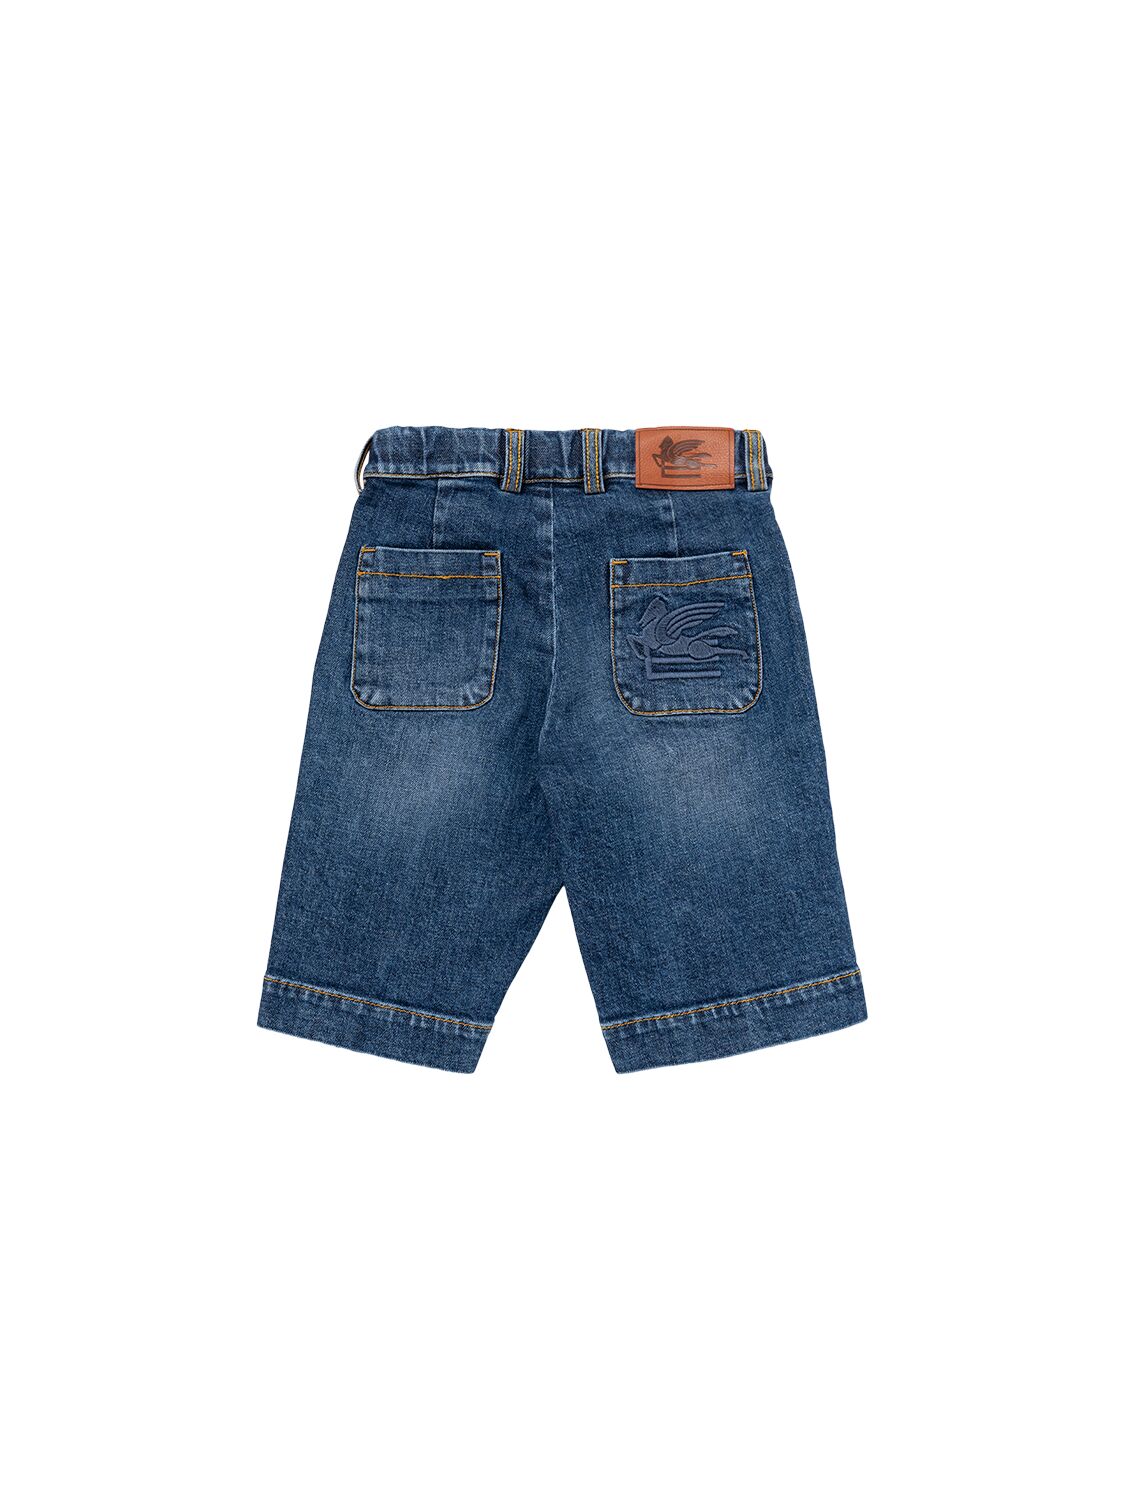 Shop Etro Cotton Denim Shorts